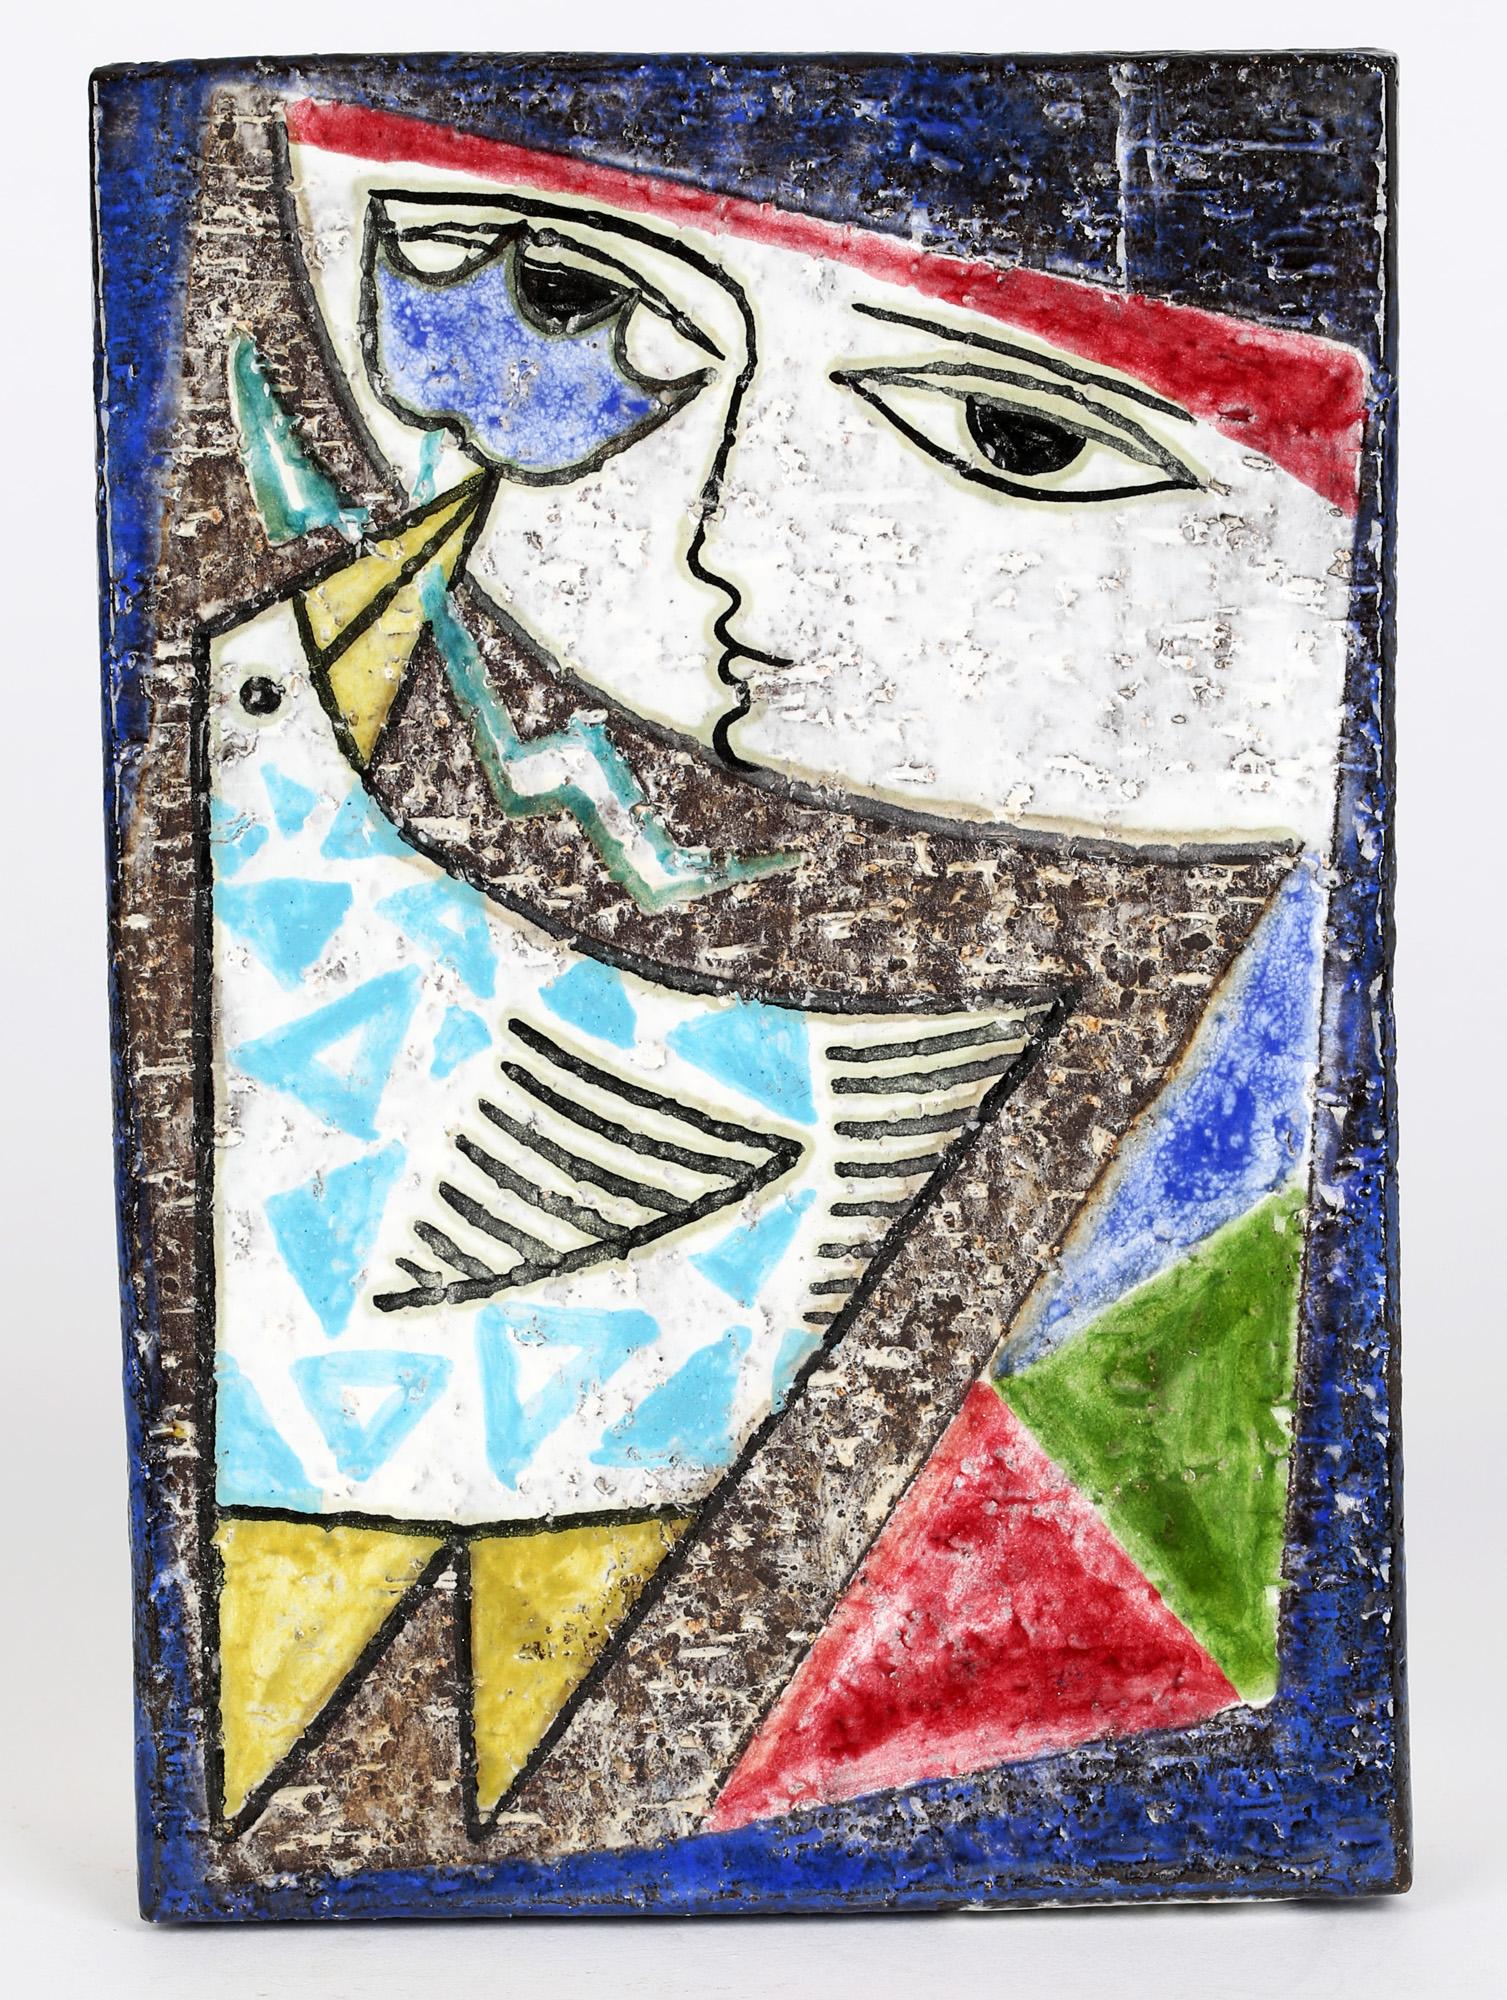 Remarquable plaque murale suédoise du milieu du siècle dernier, décorée d'un oiseau stylisé abstrait et d'une fille par Mari Simmulson (1911-2000) pour Upsala-Ekeby. La plaque en grès est de forme rectangulaire et est décorée d'un oiseau à motifs